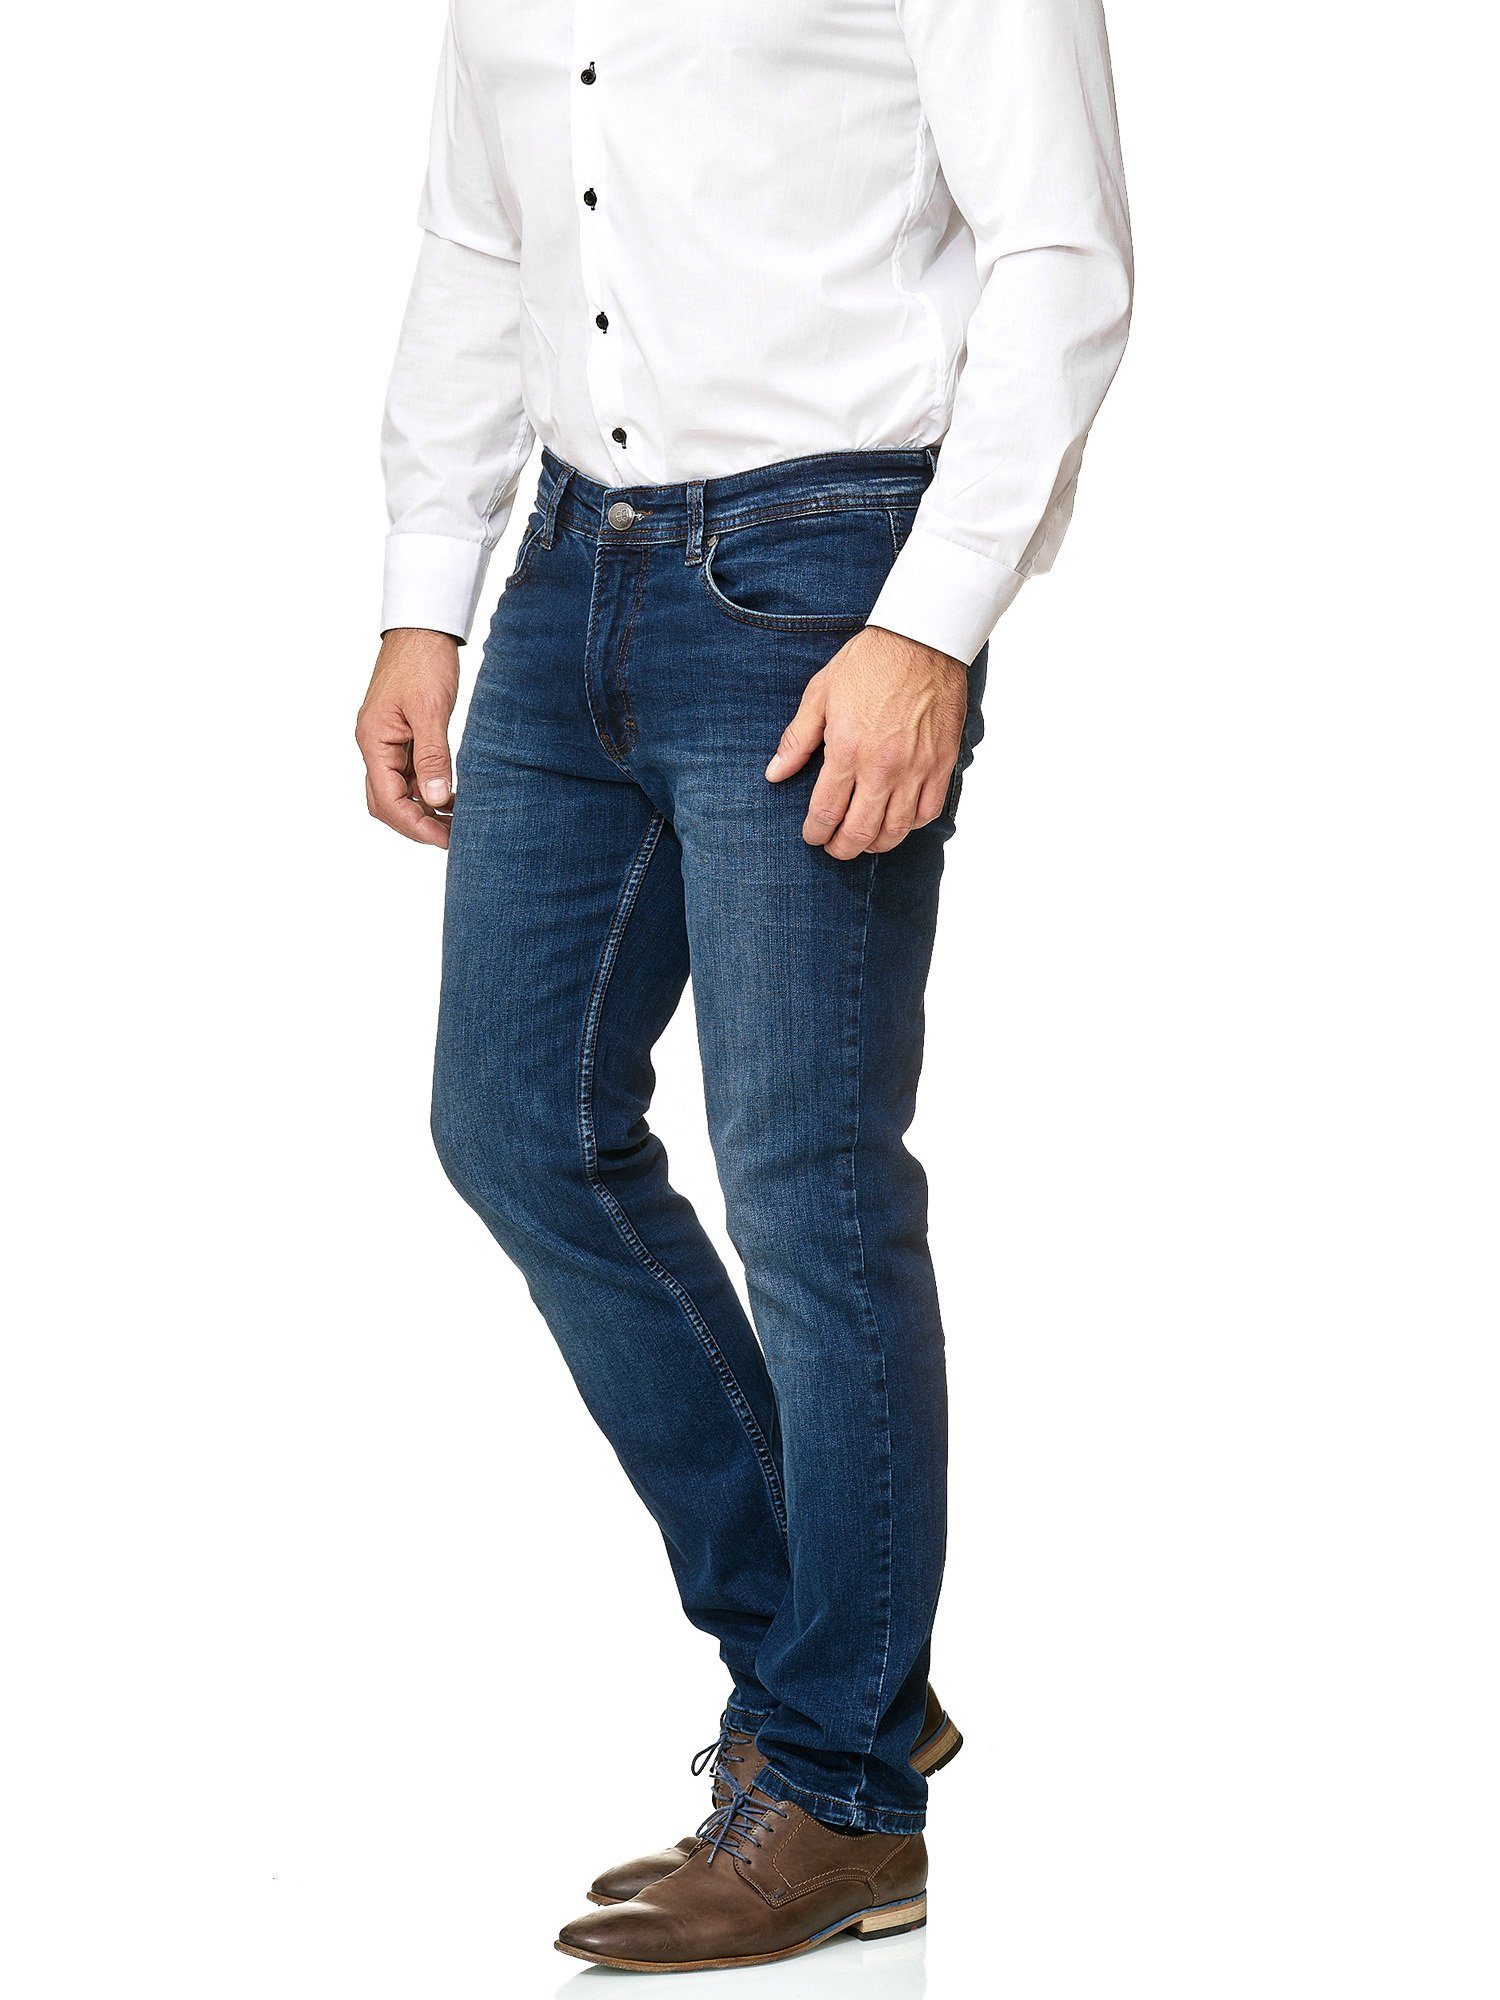 BARBONS 5-Pocket-Jeans Herren 02-Blau Fit 5-Pocket Design Regular